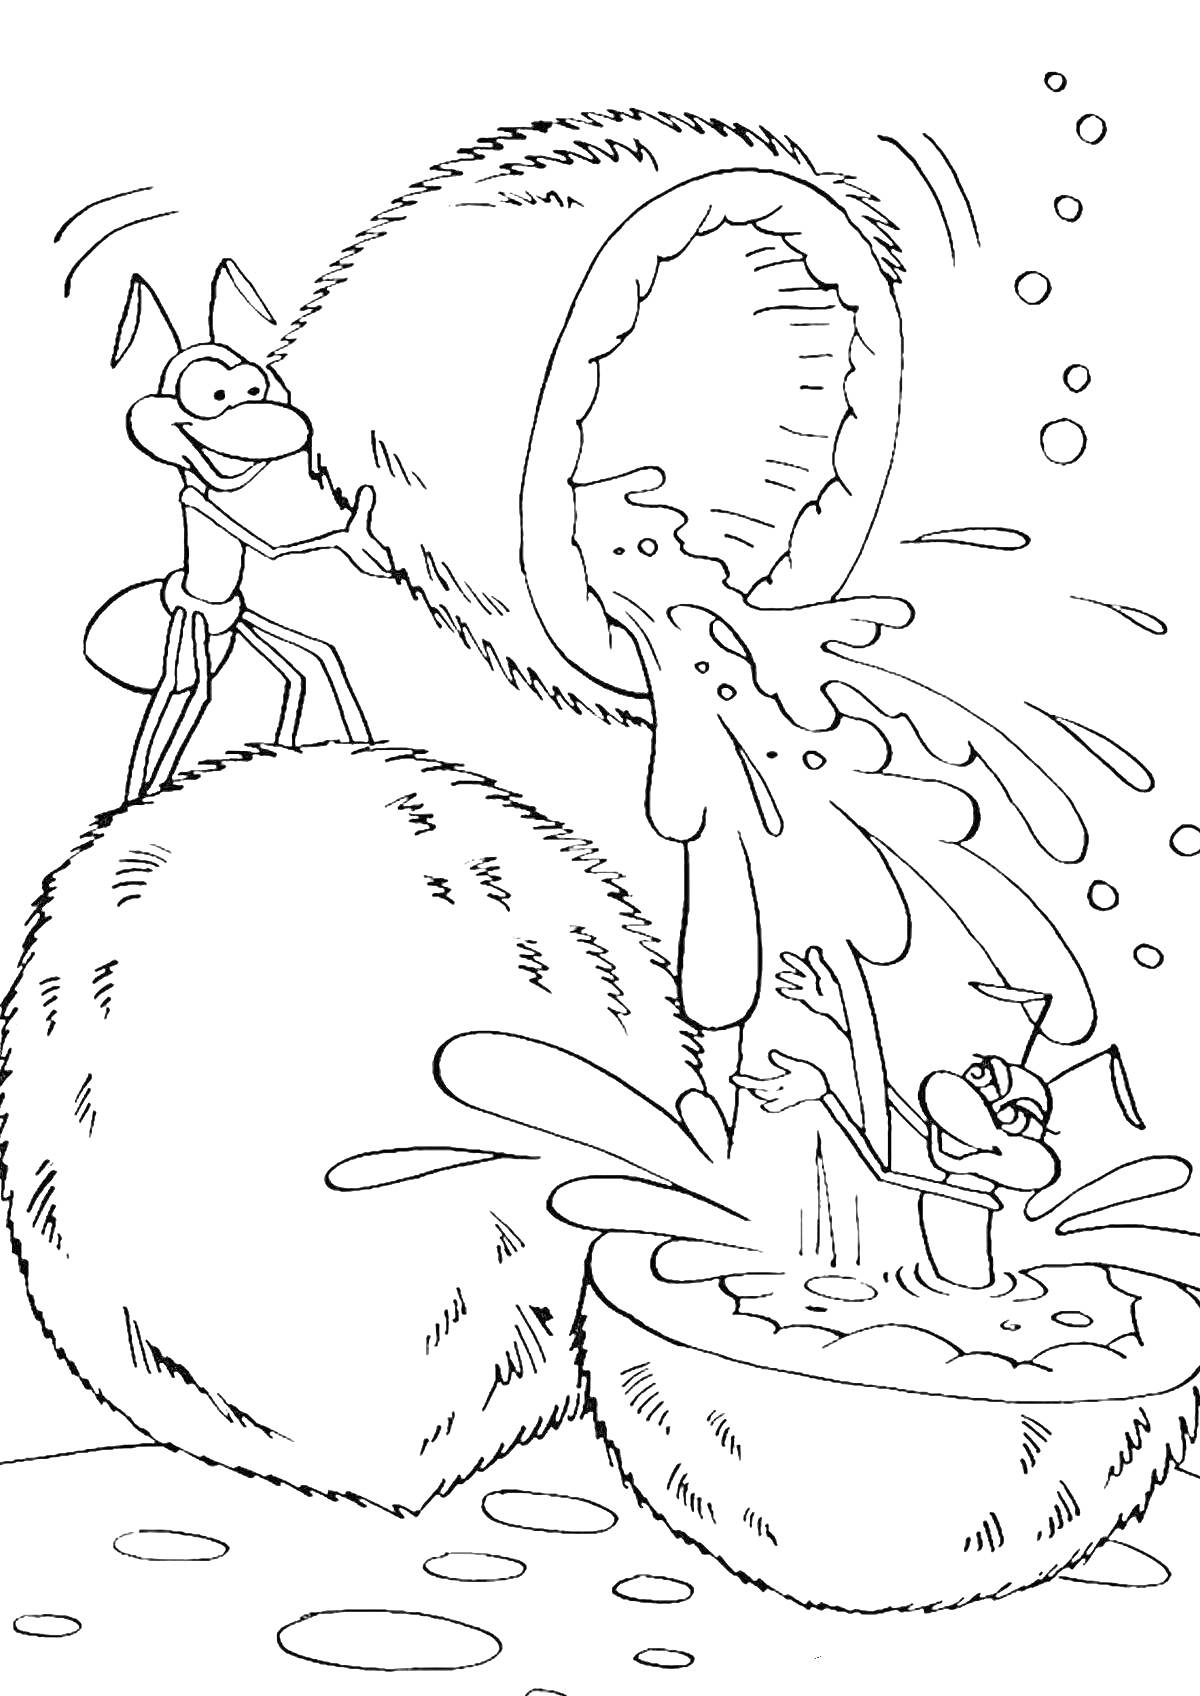 Раскраска Муравей и персонаж в кокосовой воде среди кокосов